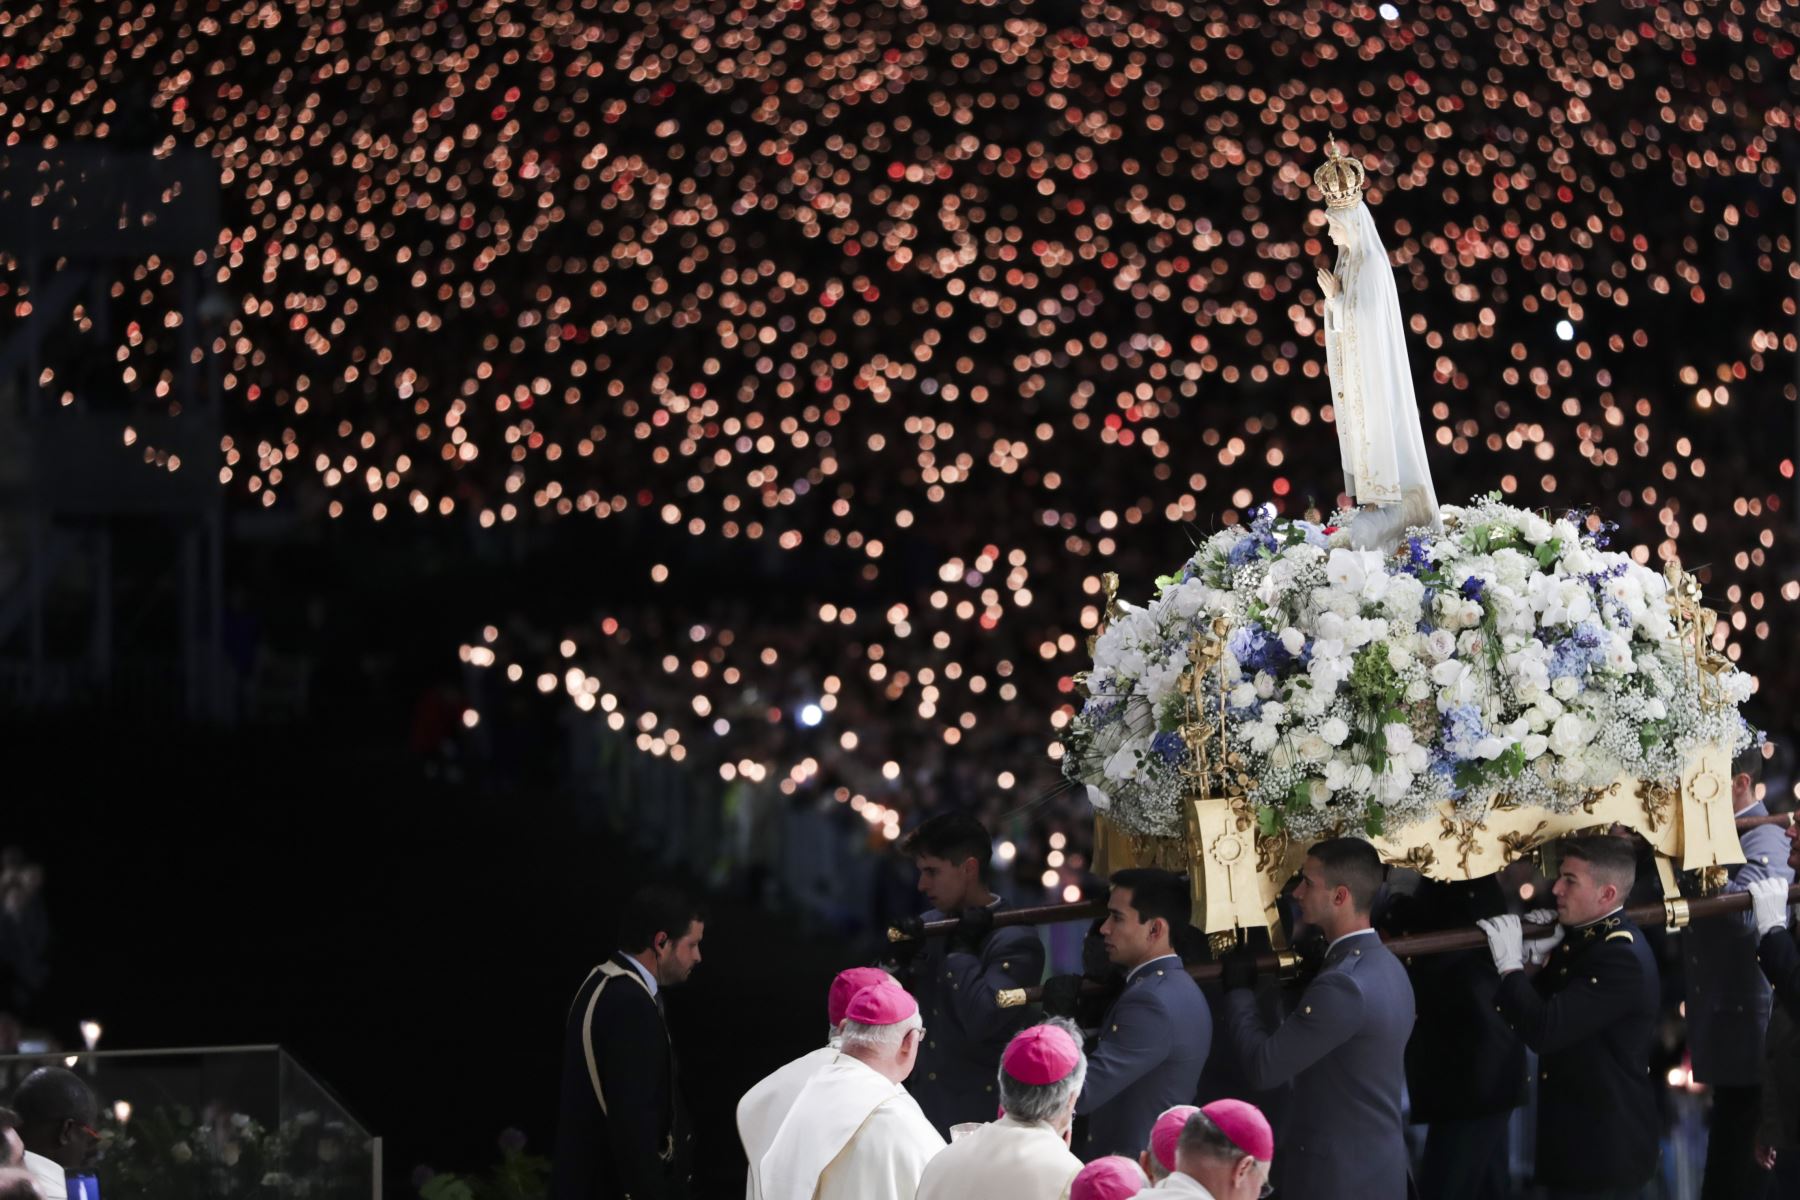 La imagen de Nuestra Señora de Fátima es transportada durante la procesión con velas de la peregrinación del 13 de mayo al Santuario de Fátima, Portugal. Foto: EFE